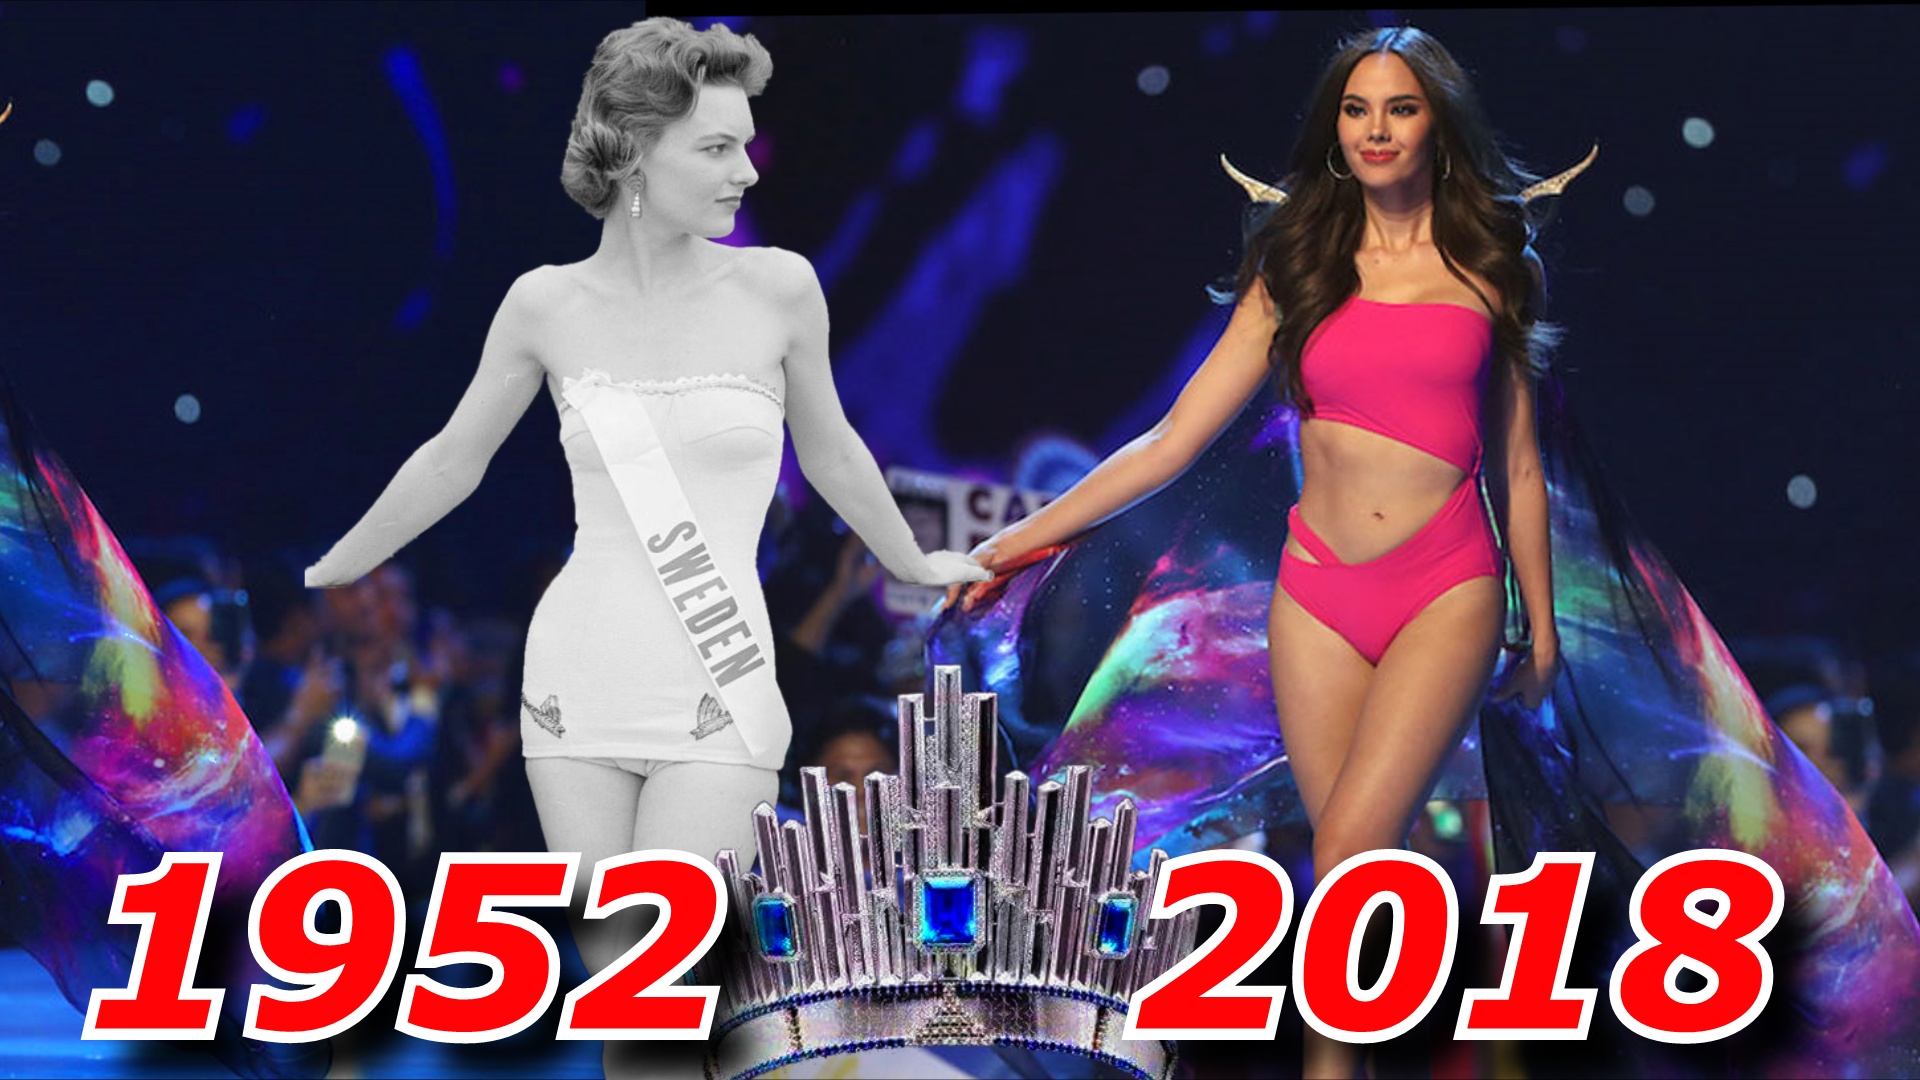 Конкурс красоты Мисс Вселенная все победительницы 1952-2018.mp4